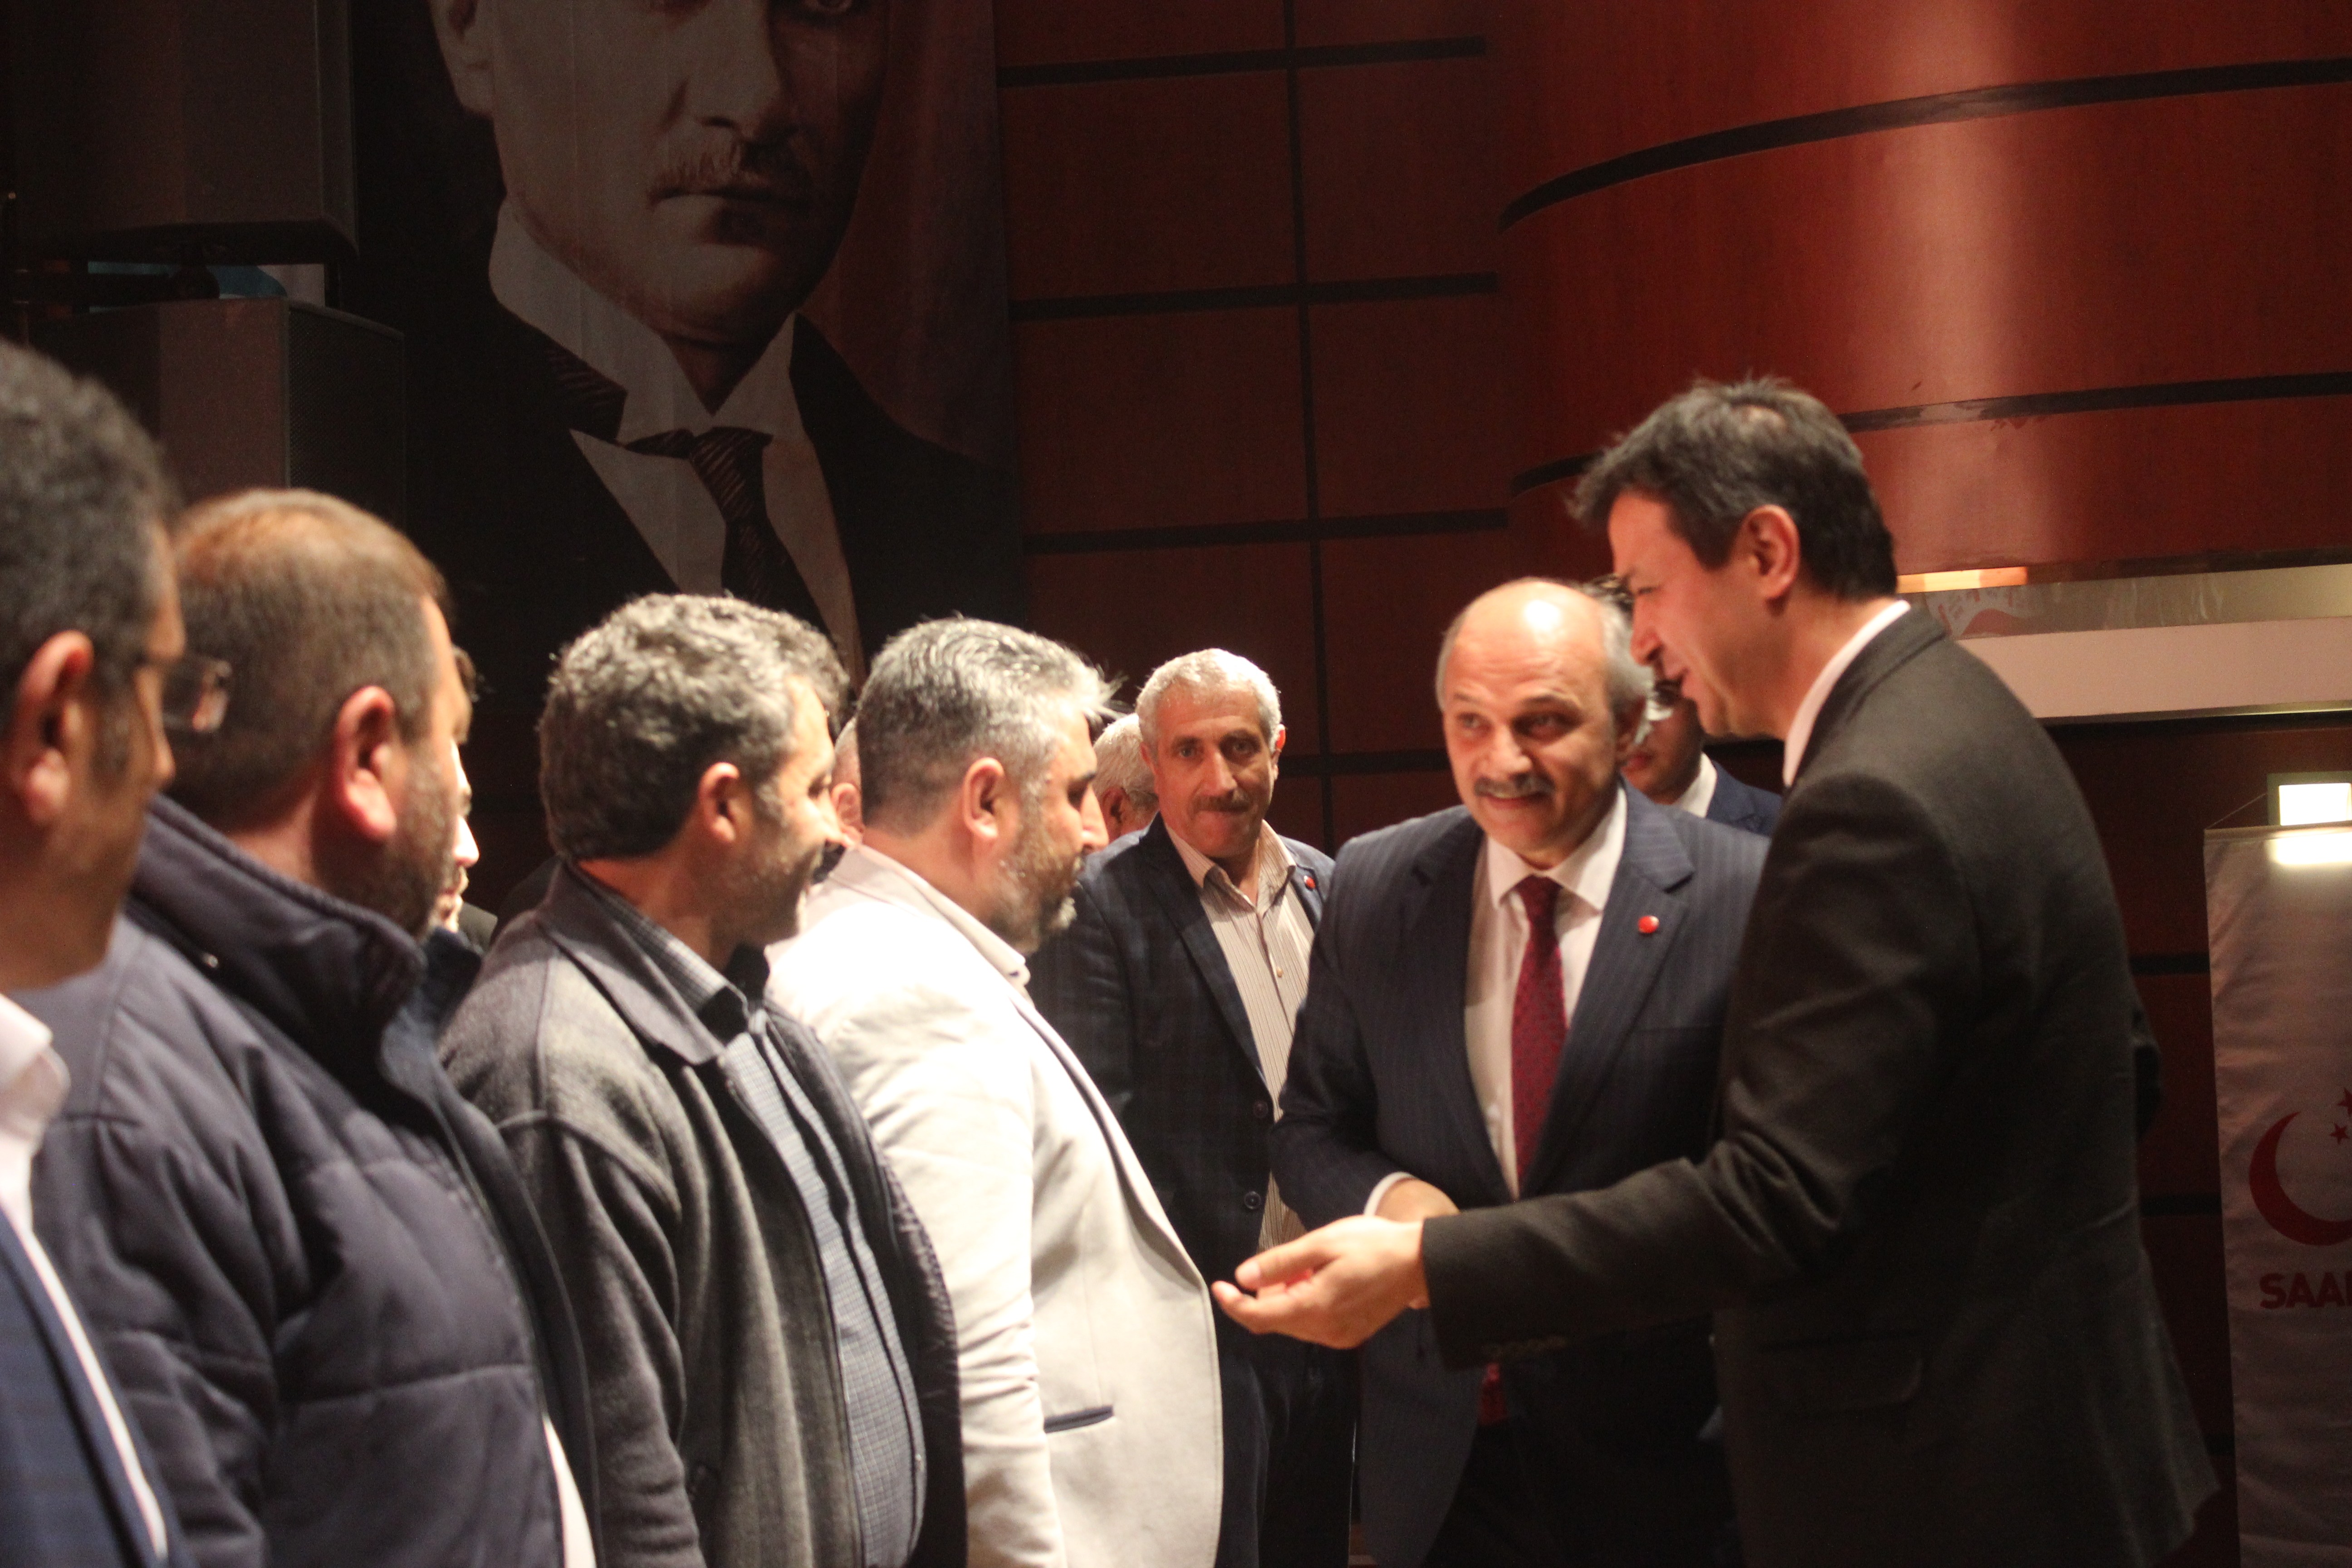 SP Genel Başkan Yardımcısı Birol Aydın: “Türkiye bütün mazlumların umududur”